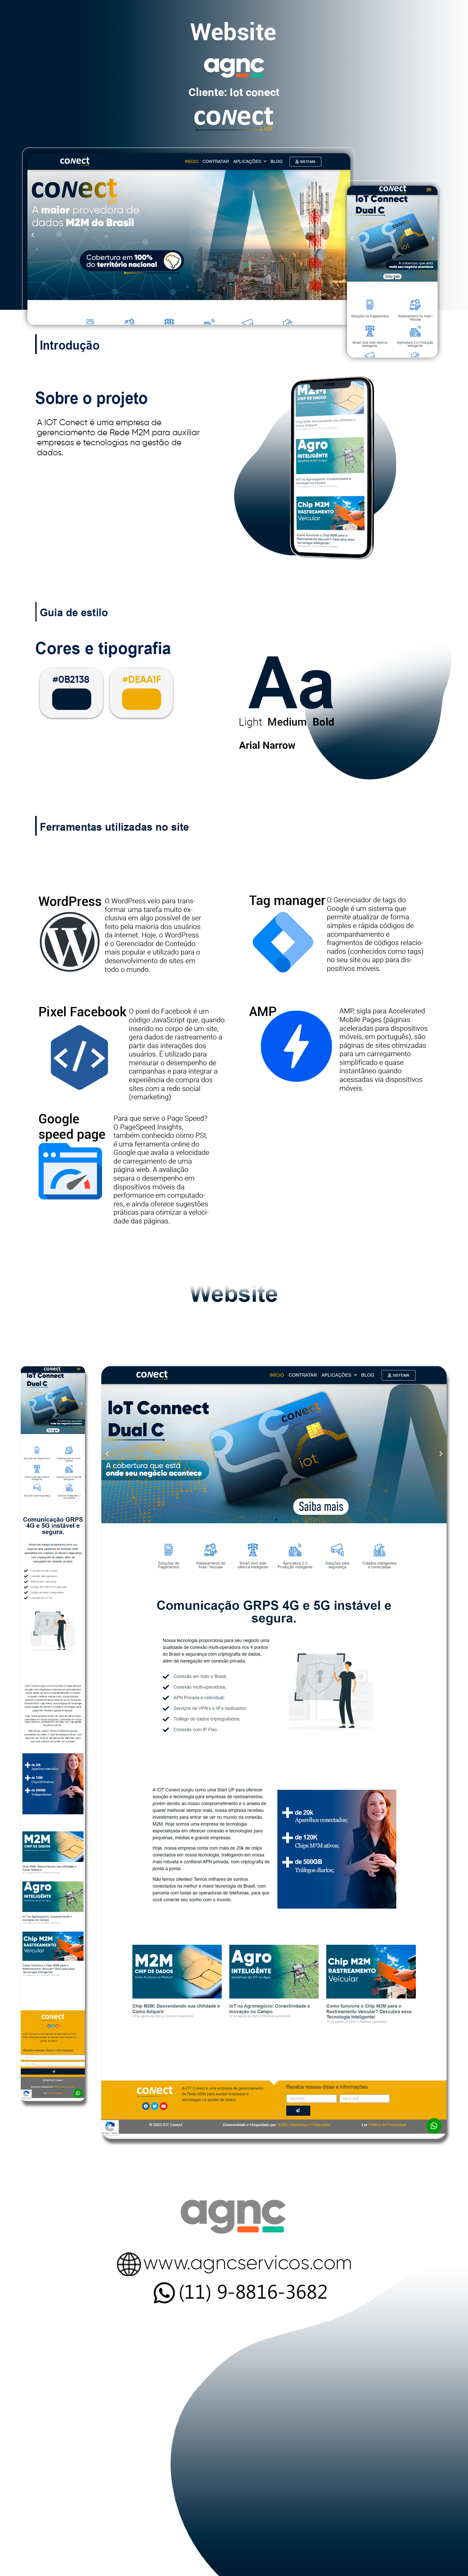 portifolio de site Iot conect AGNC - Agência de Marketing